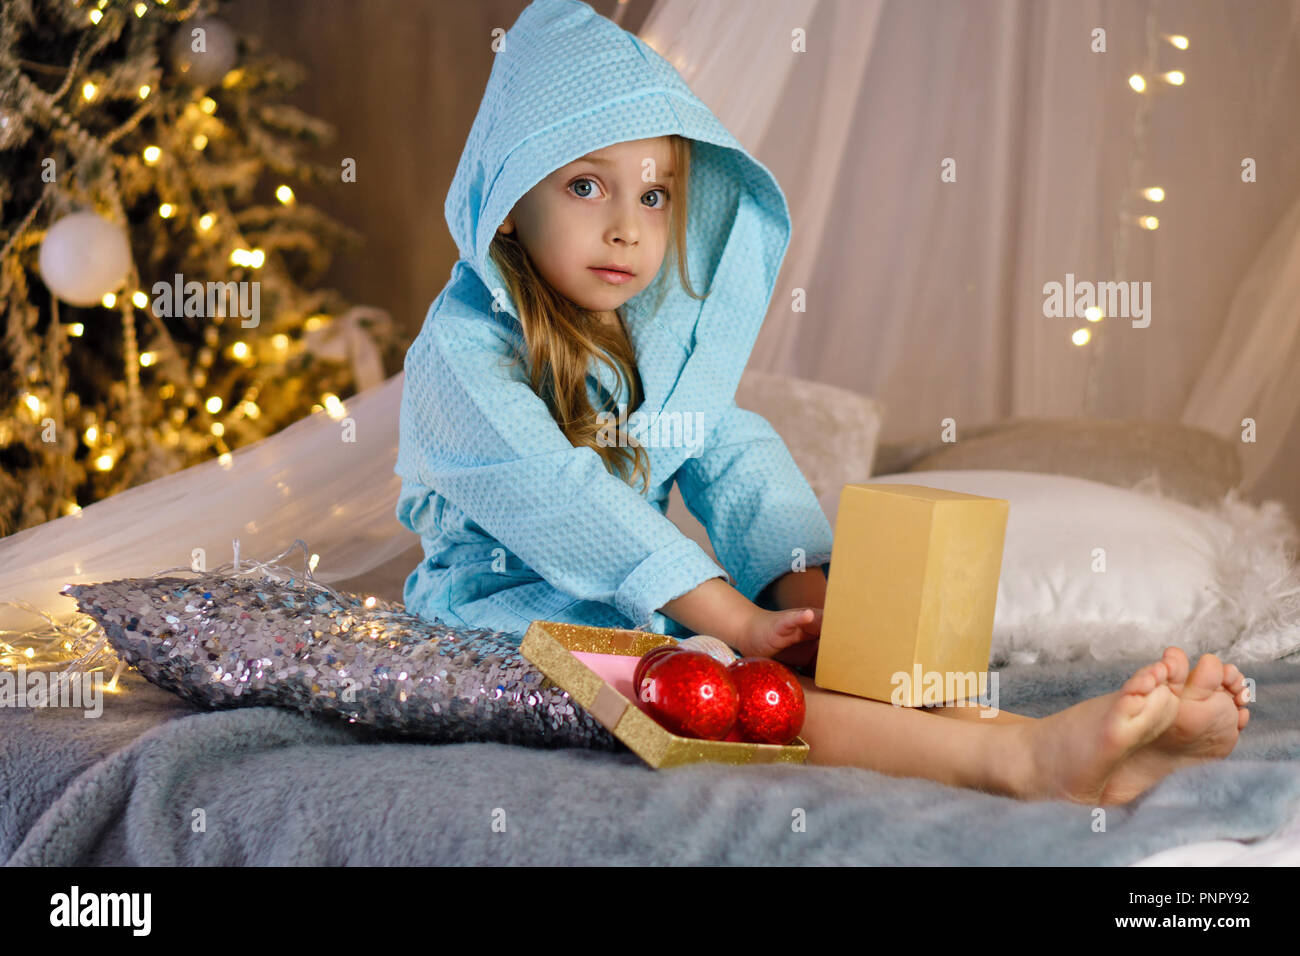 Bambina in accappatoio è seduta sul letto. Albero di natale con ornamenti in background. Infanzia felice. Foto Stock